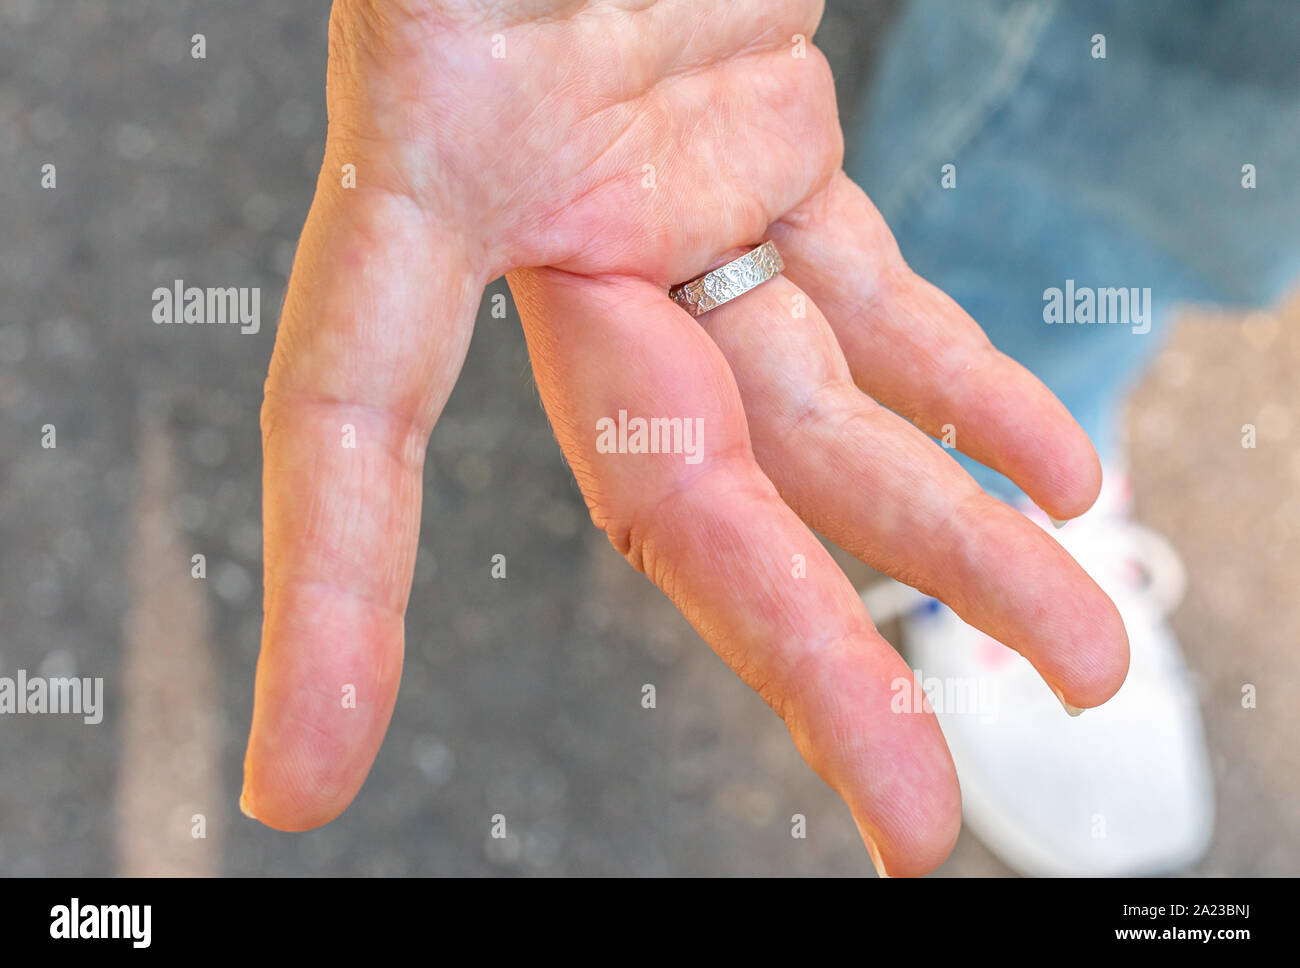 Une main droite avec un doigt enflé après une piqûre d'abeille Banque D'Images